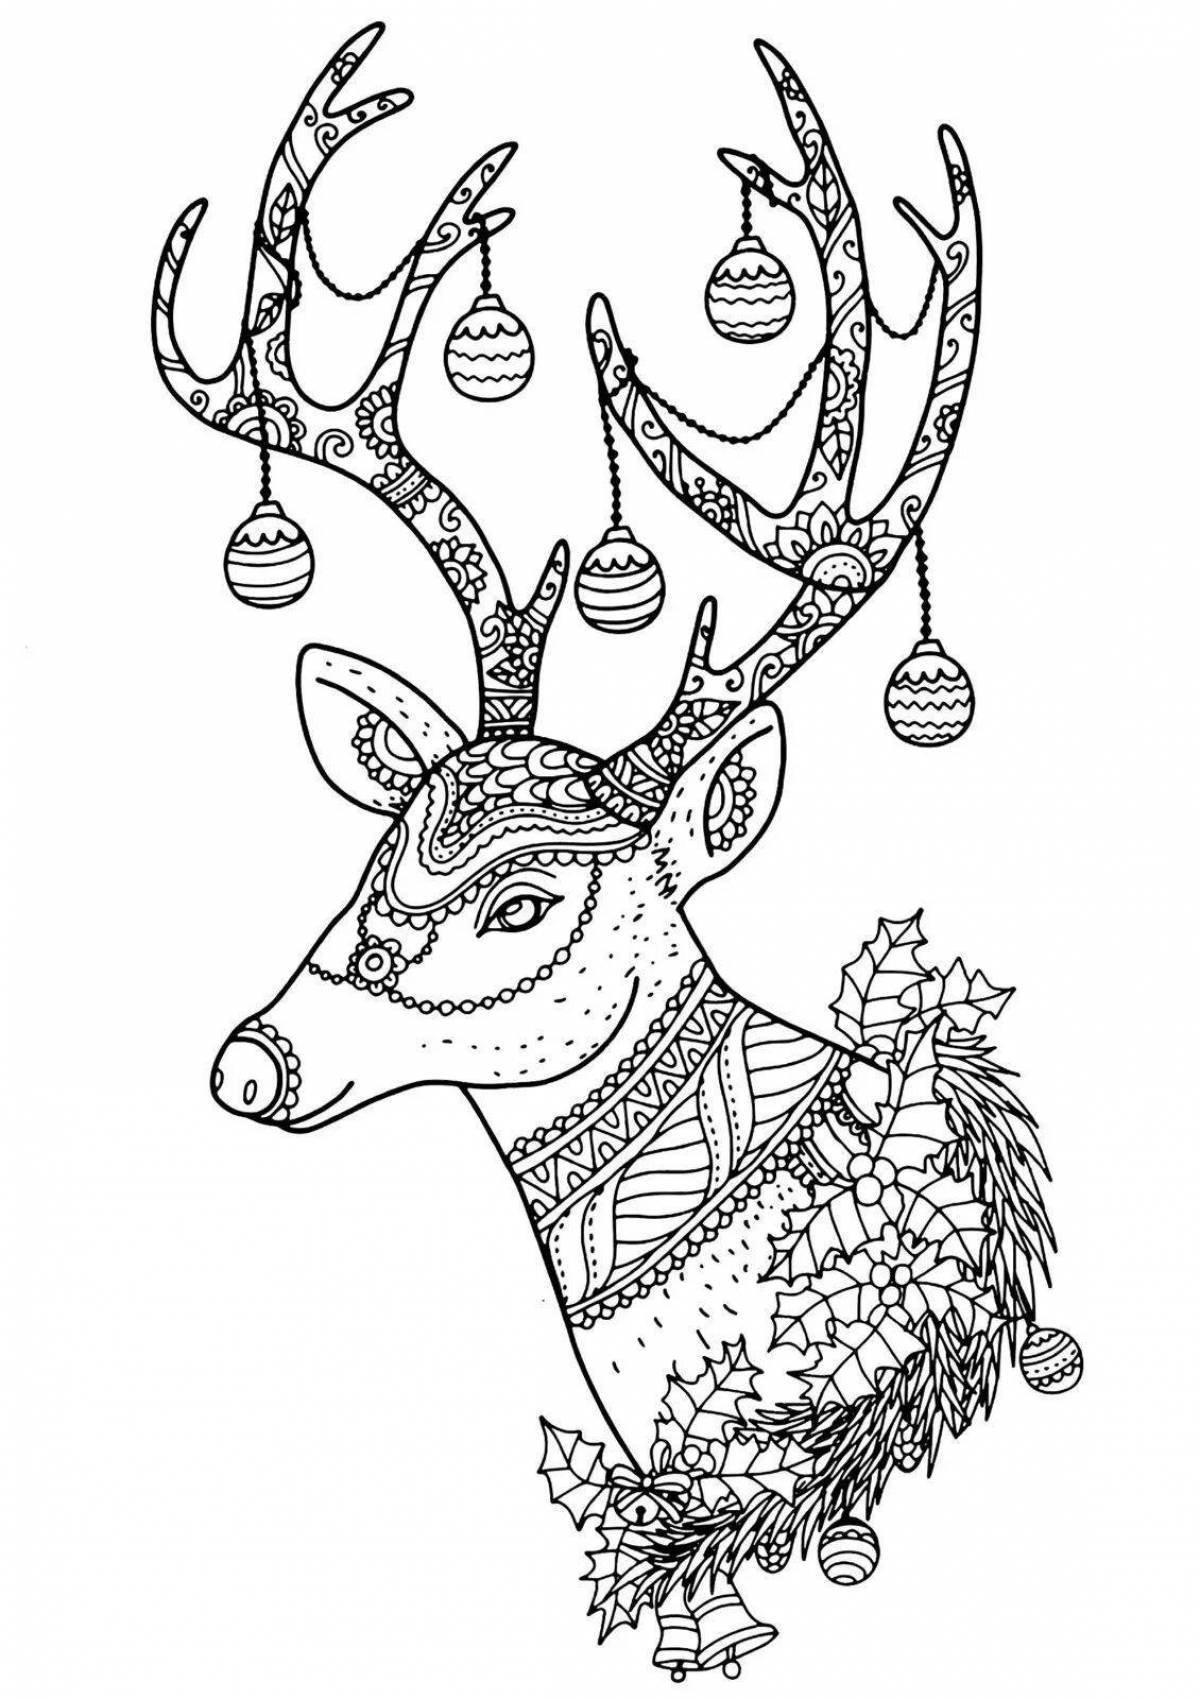 Fancy Christmas reindeer